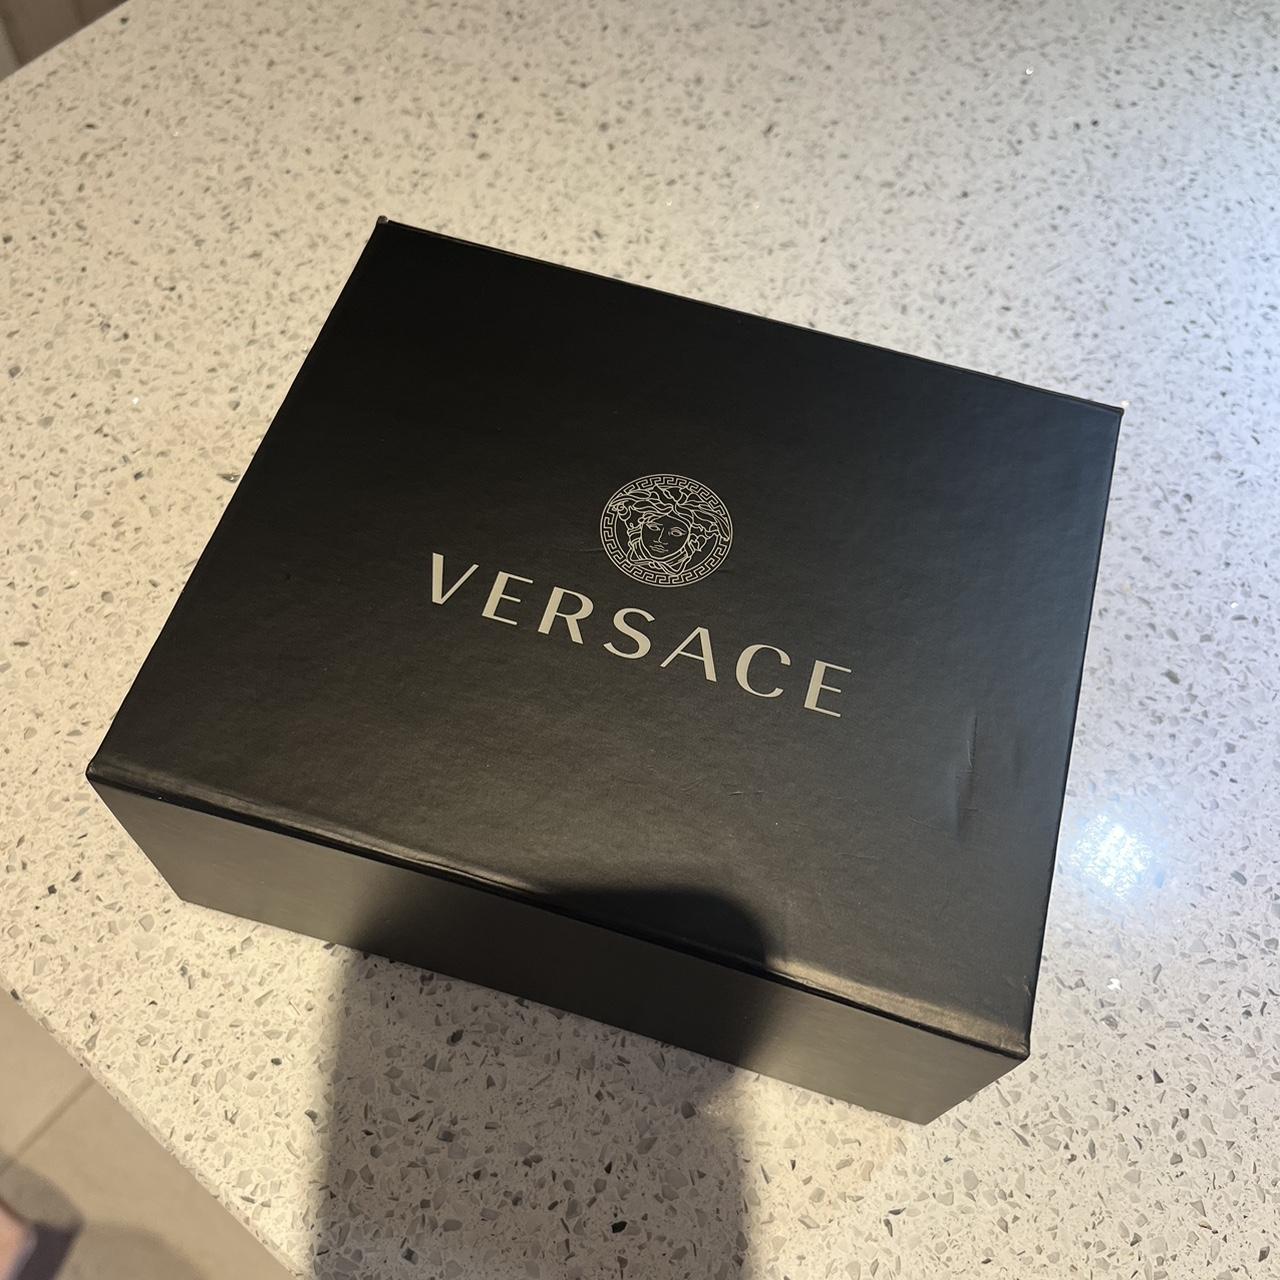 Genuine Versace earrings. Unwanted gift! 🤩 - Depop